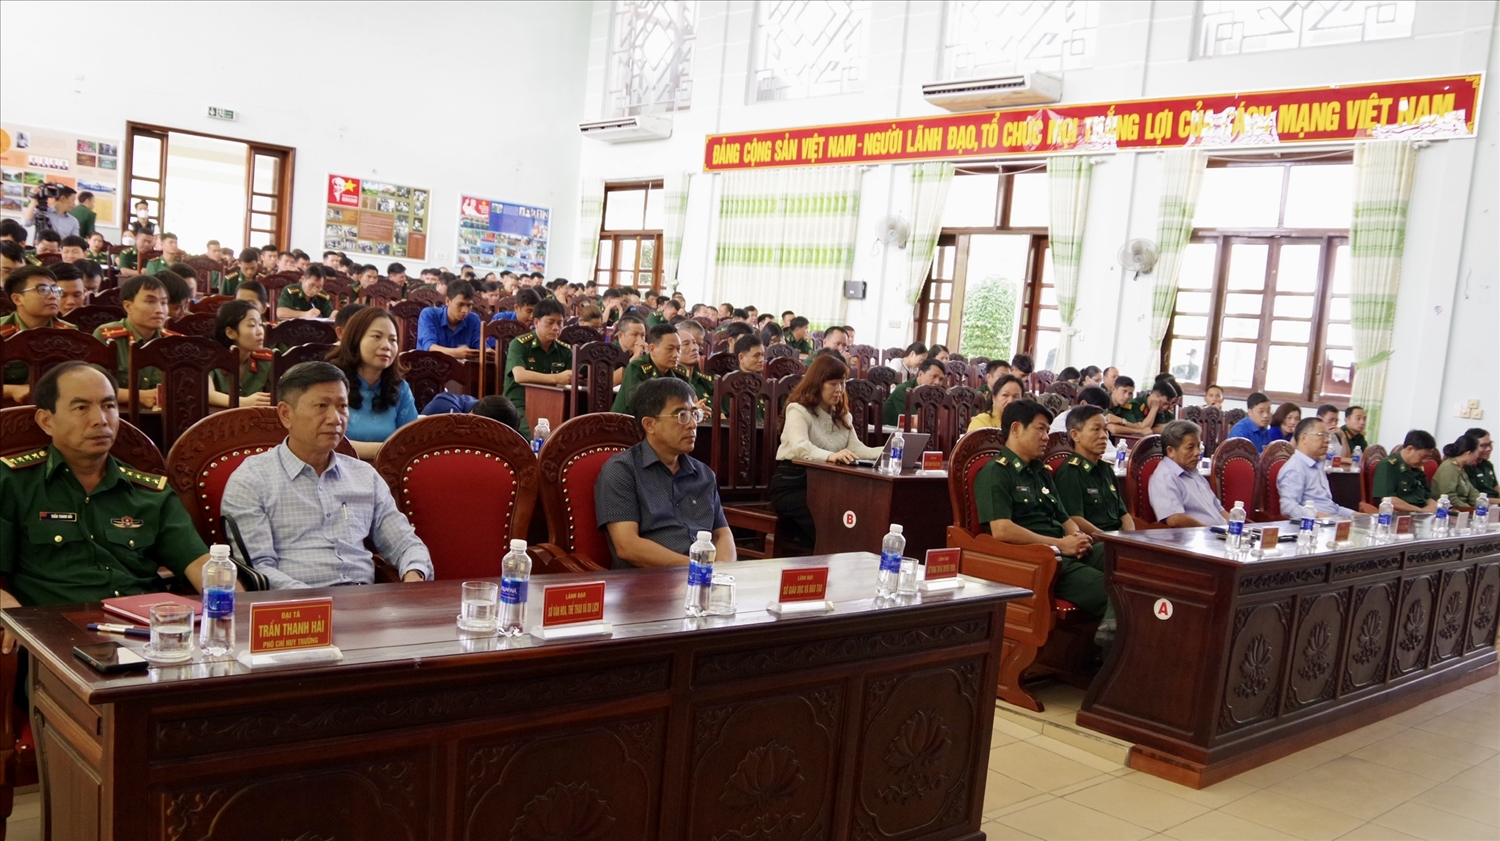 Các đại biểu dự lễ phát động Cuộc thi viết Tìm hiểu biên giới tỉnh Kon Tum và 60 năm truyền thống BĐBP tỉnh